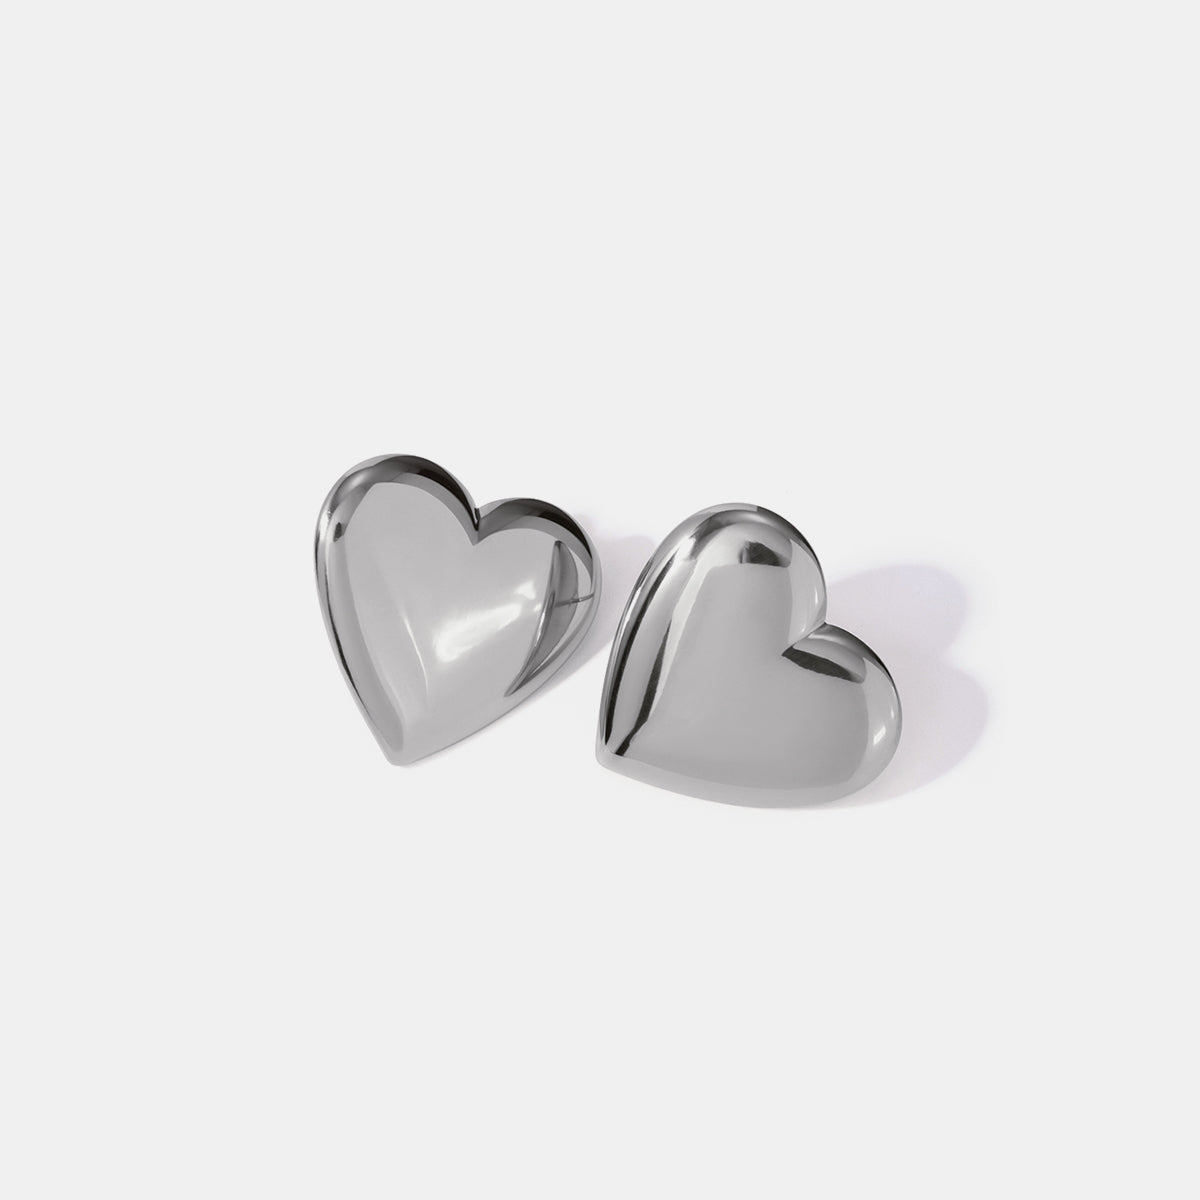 Stainless Steel Heart Stud Earrings Silver One Size 